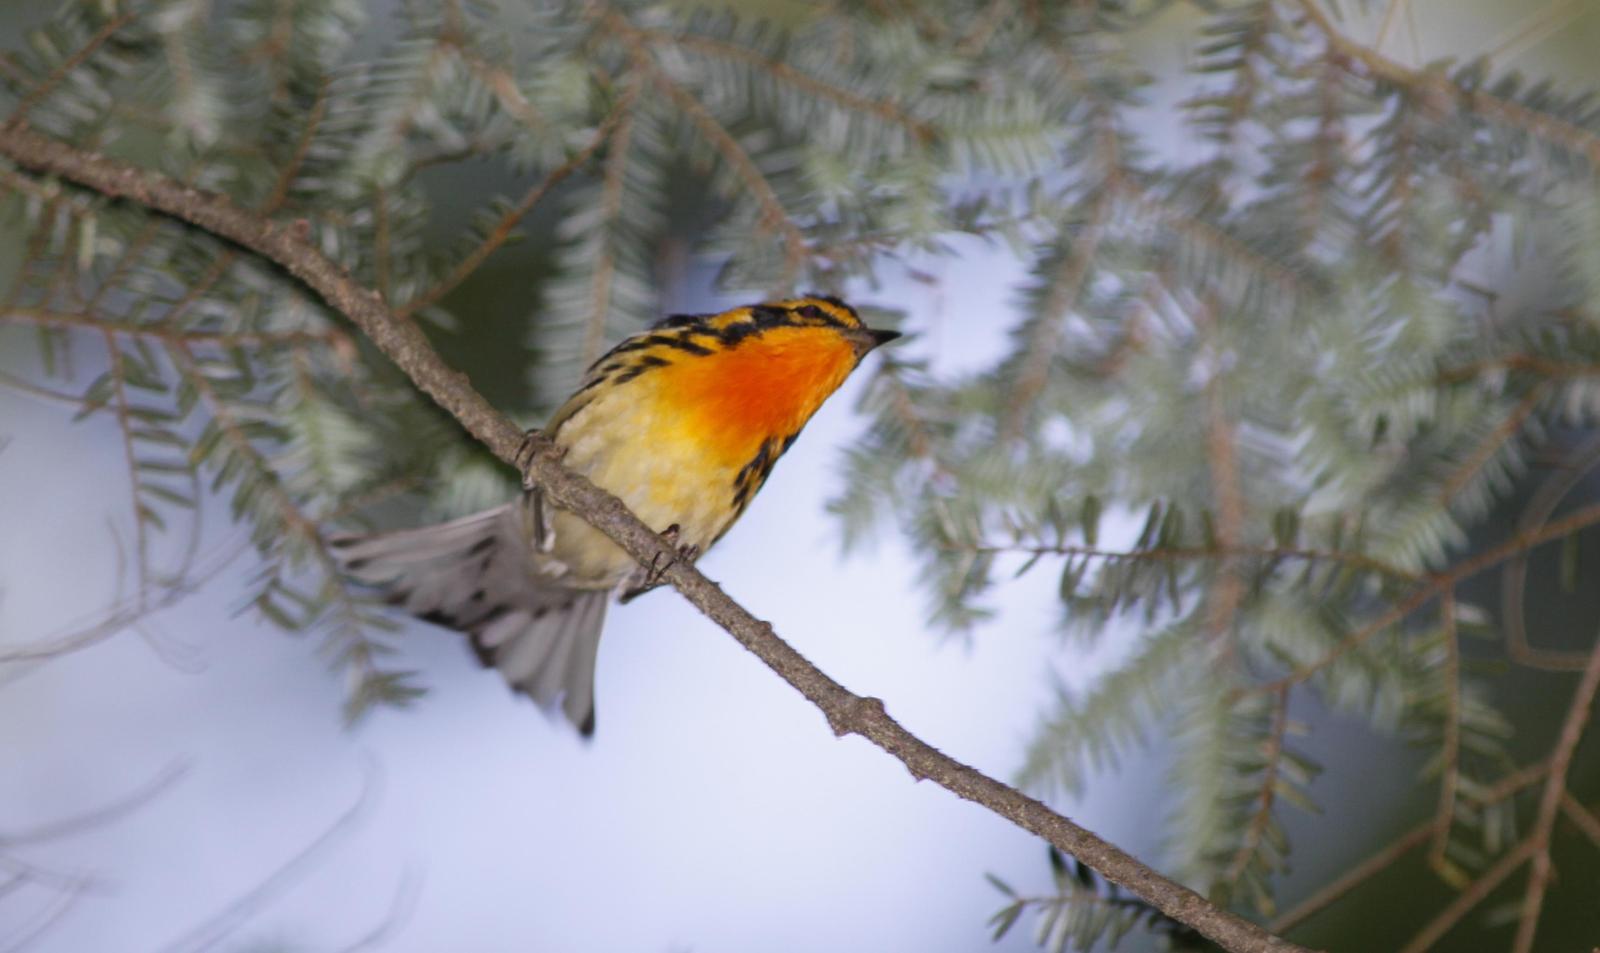 Blackburnian Warbler Photo by Tim Schreckengost